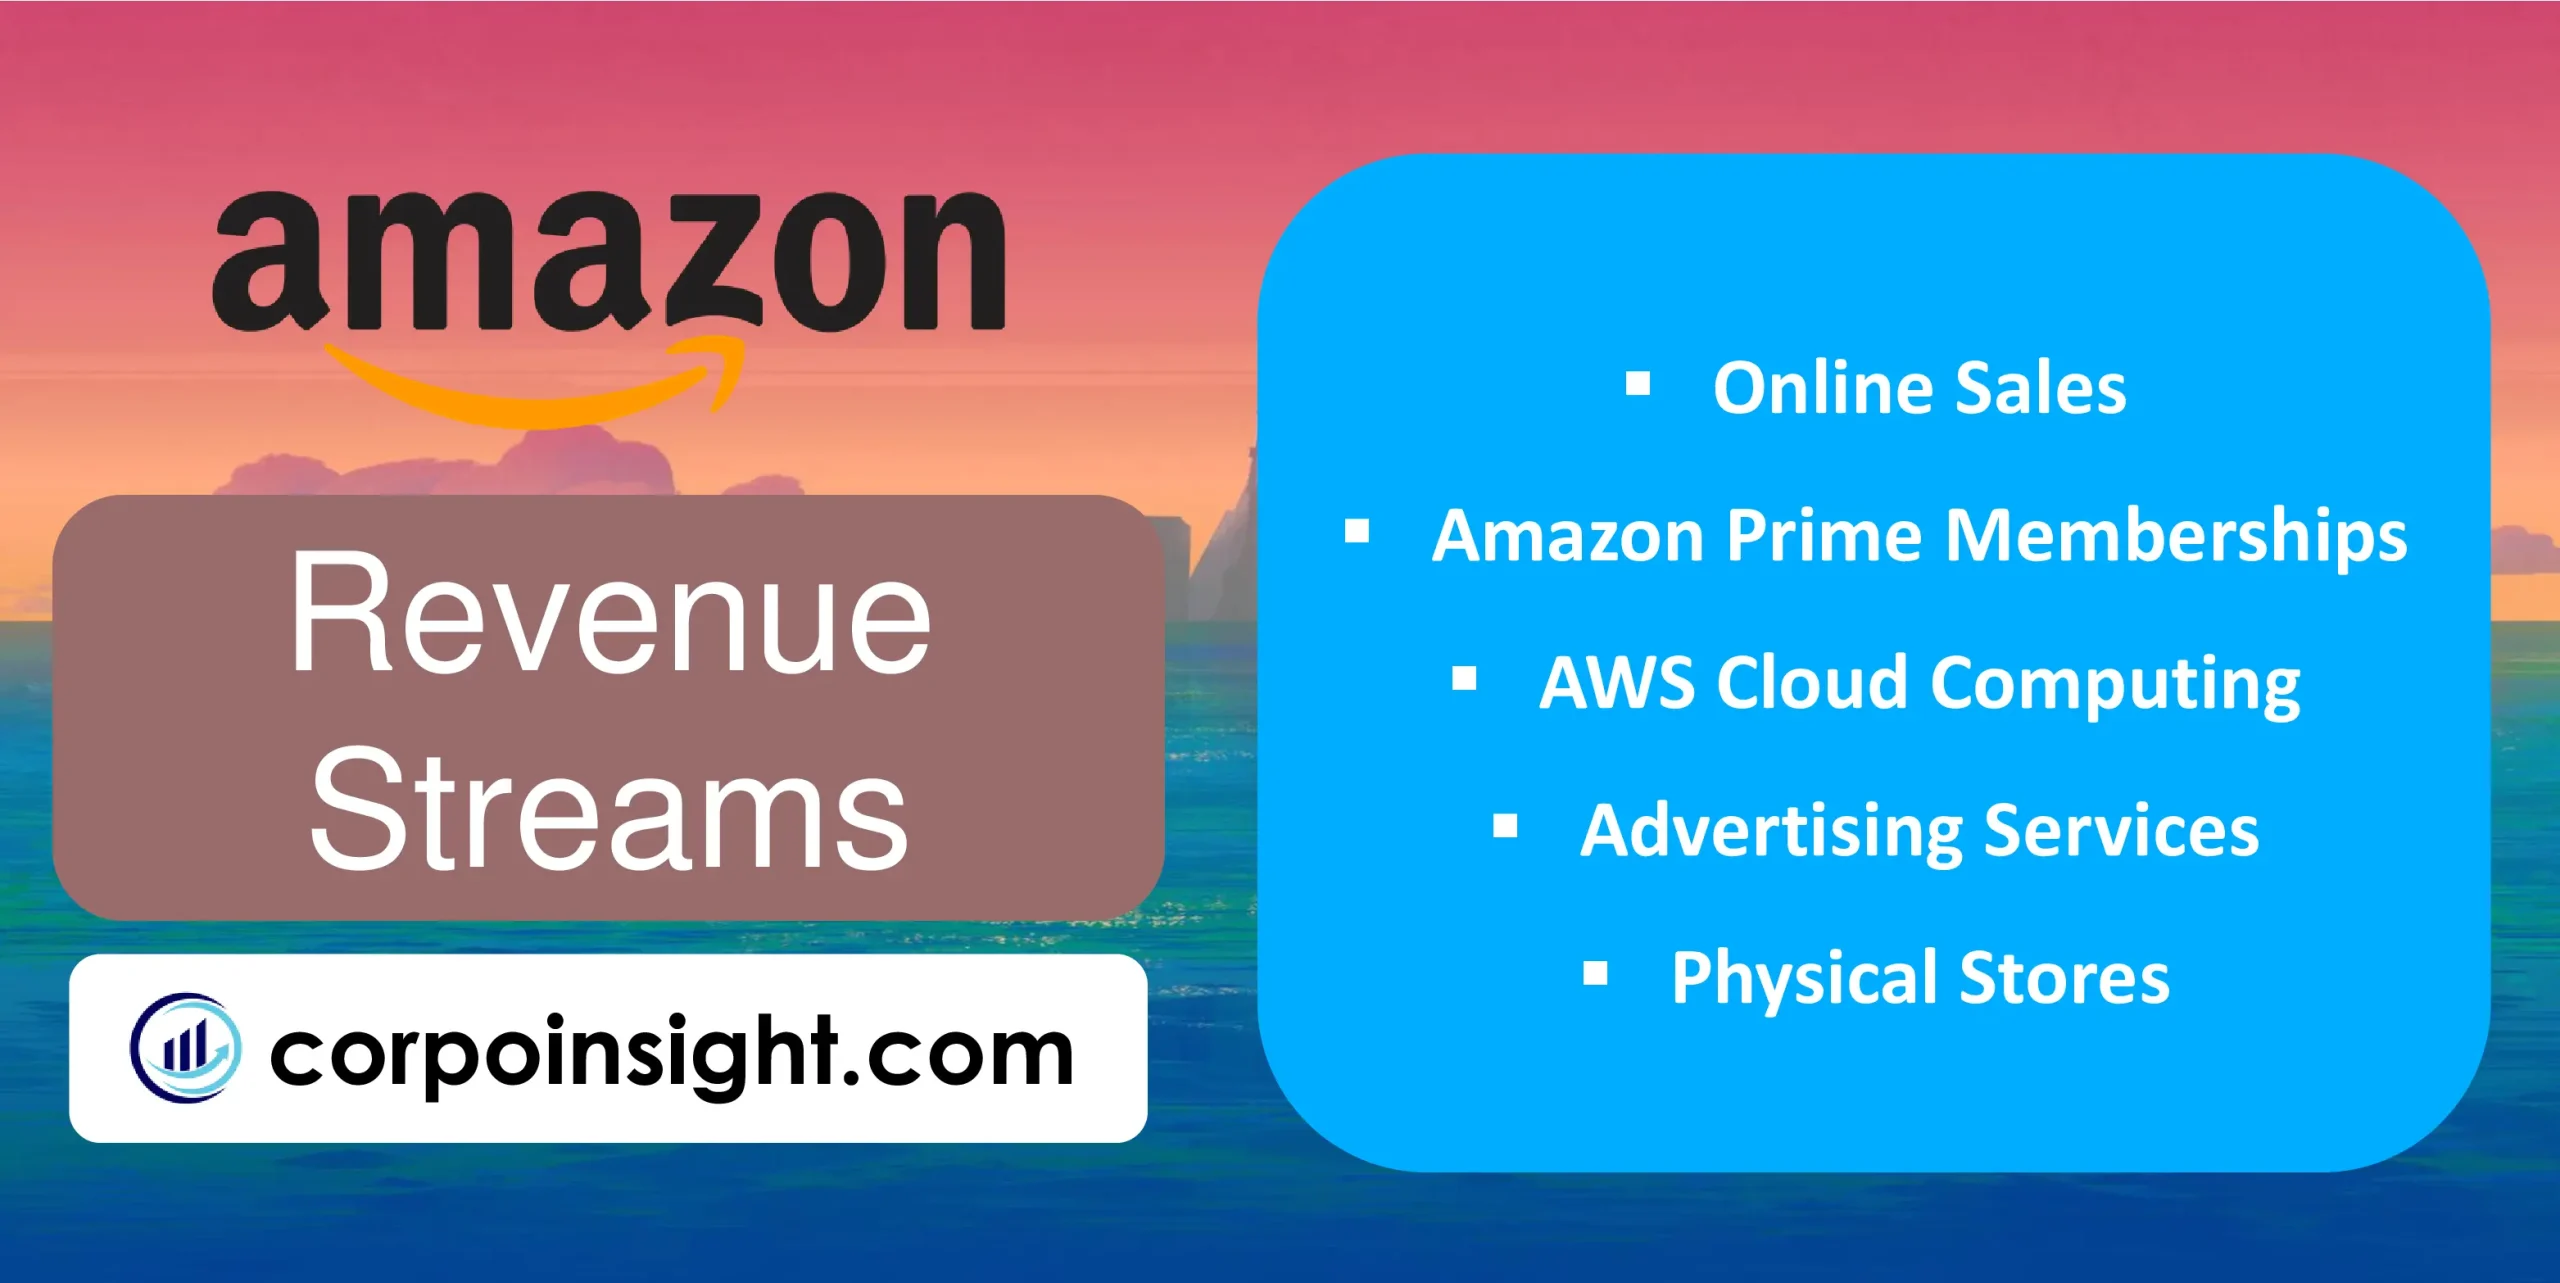 Revenue Streams of Amazon